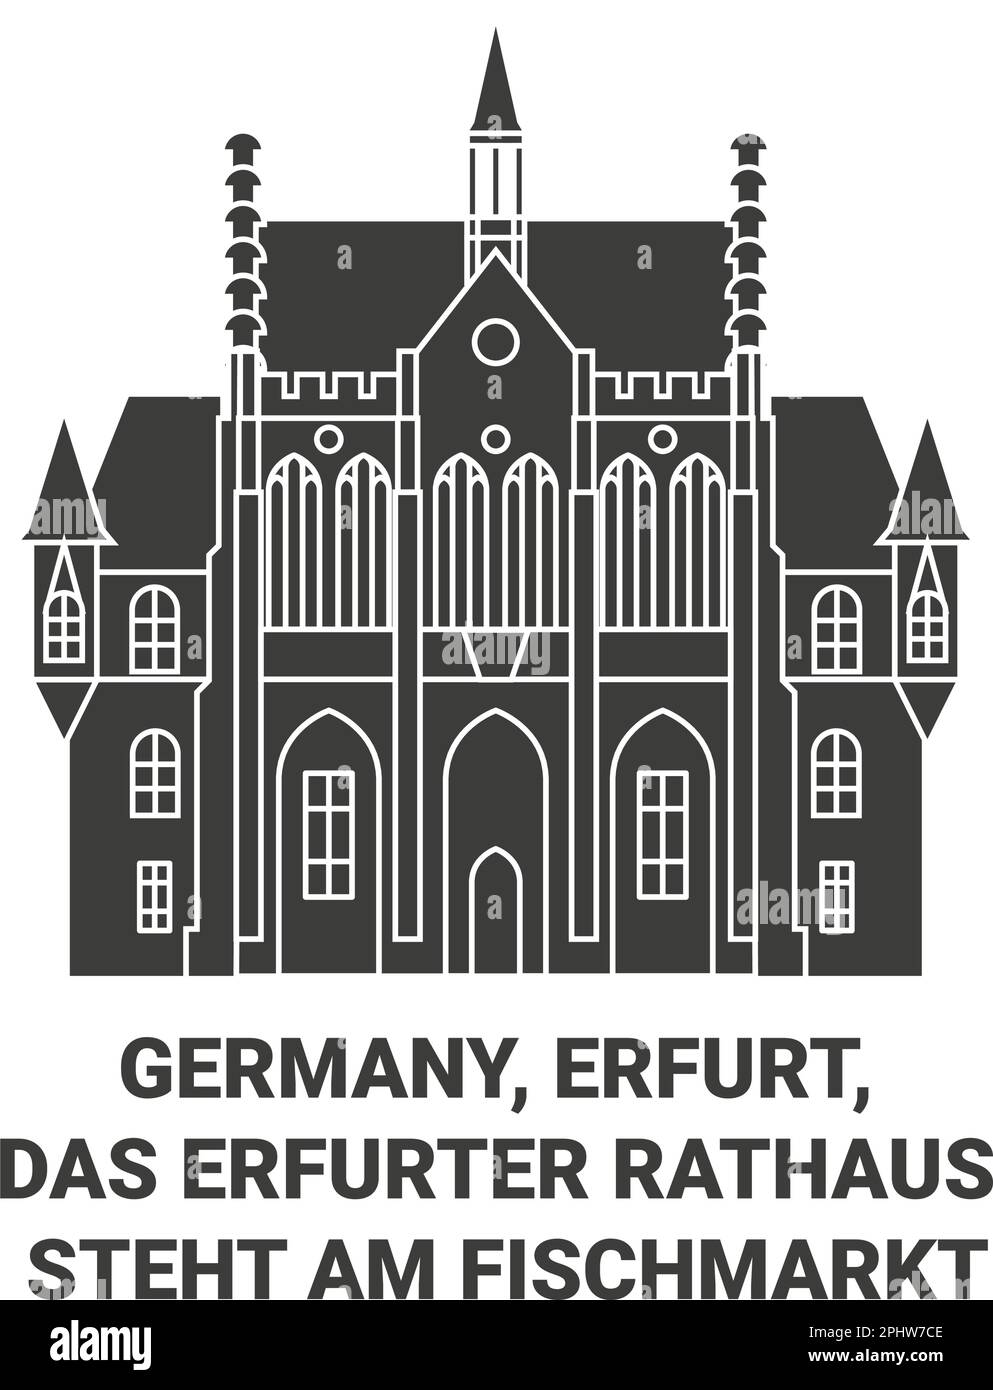 Deutschland, Erfurt, das Erfurter Rathaus steht am Fischmarkt travel Landmark Vector Illustration Stock Vektor